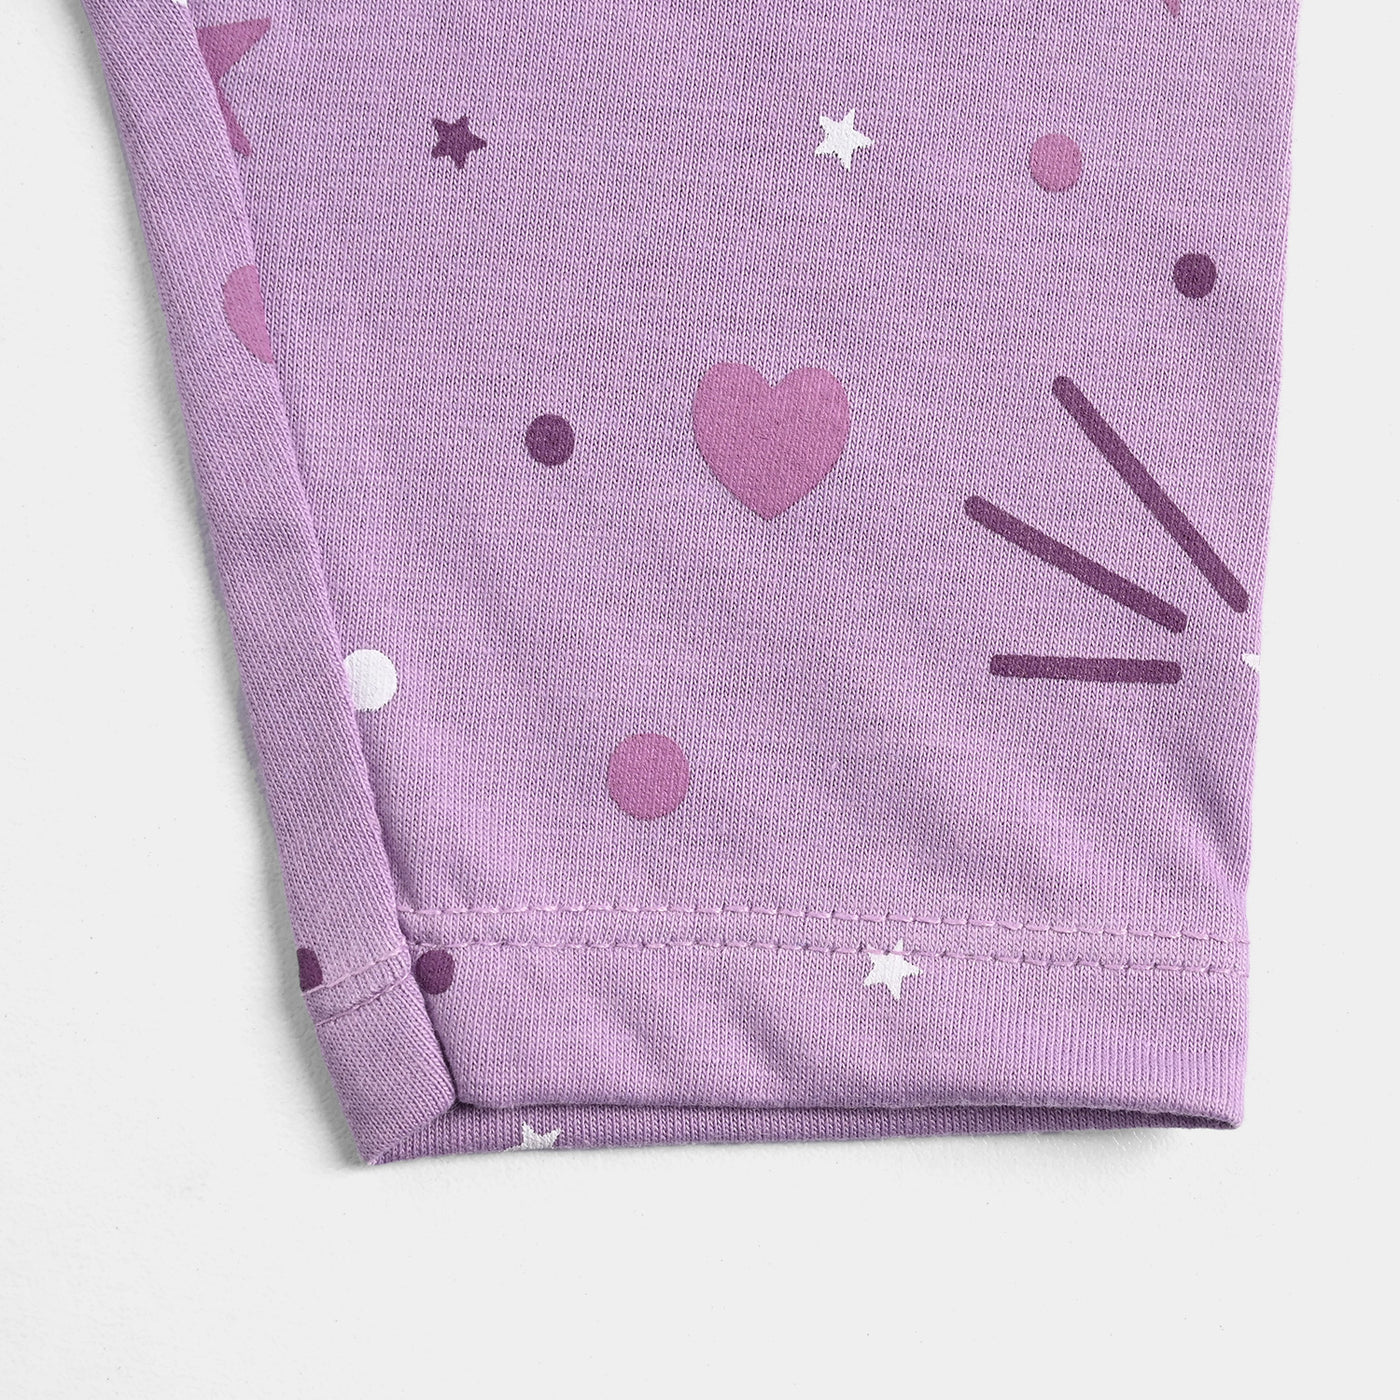 Infant Girls PC Jersey Night Wear Suit Little Star-Purple